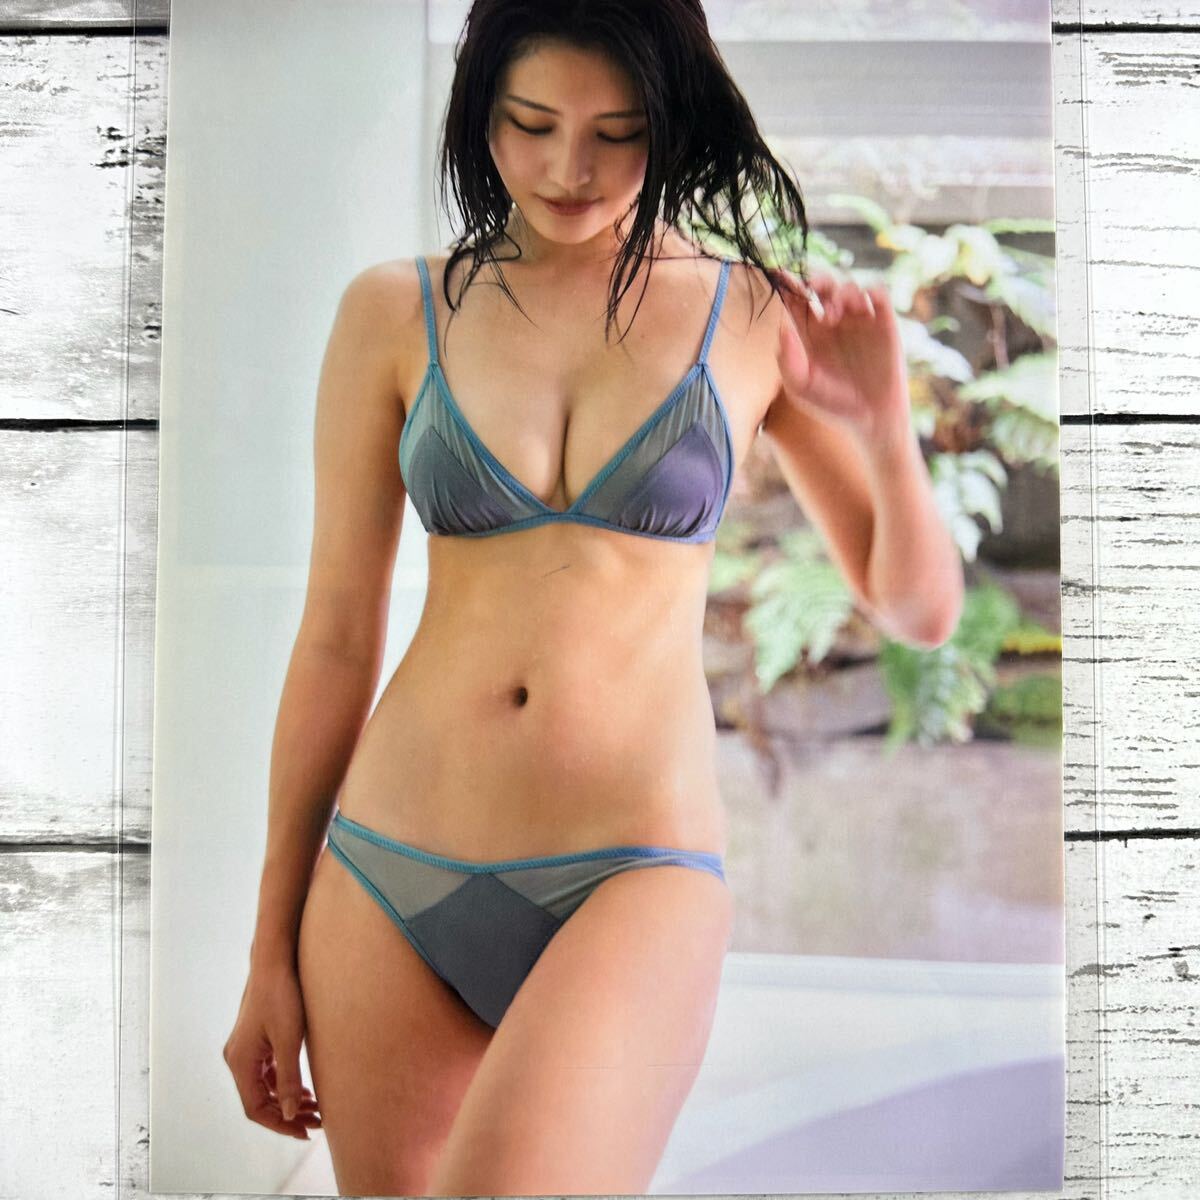 [ высокое качество ламинирование отделка ][...] журнал вырезки 9P B5 плёнка купальный костюм bikini model актер женщина super 